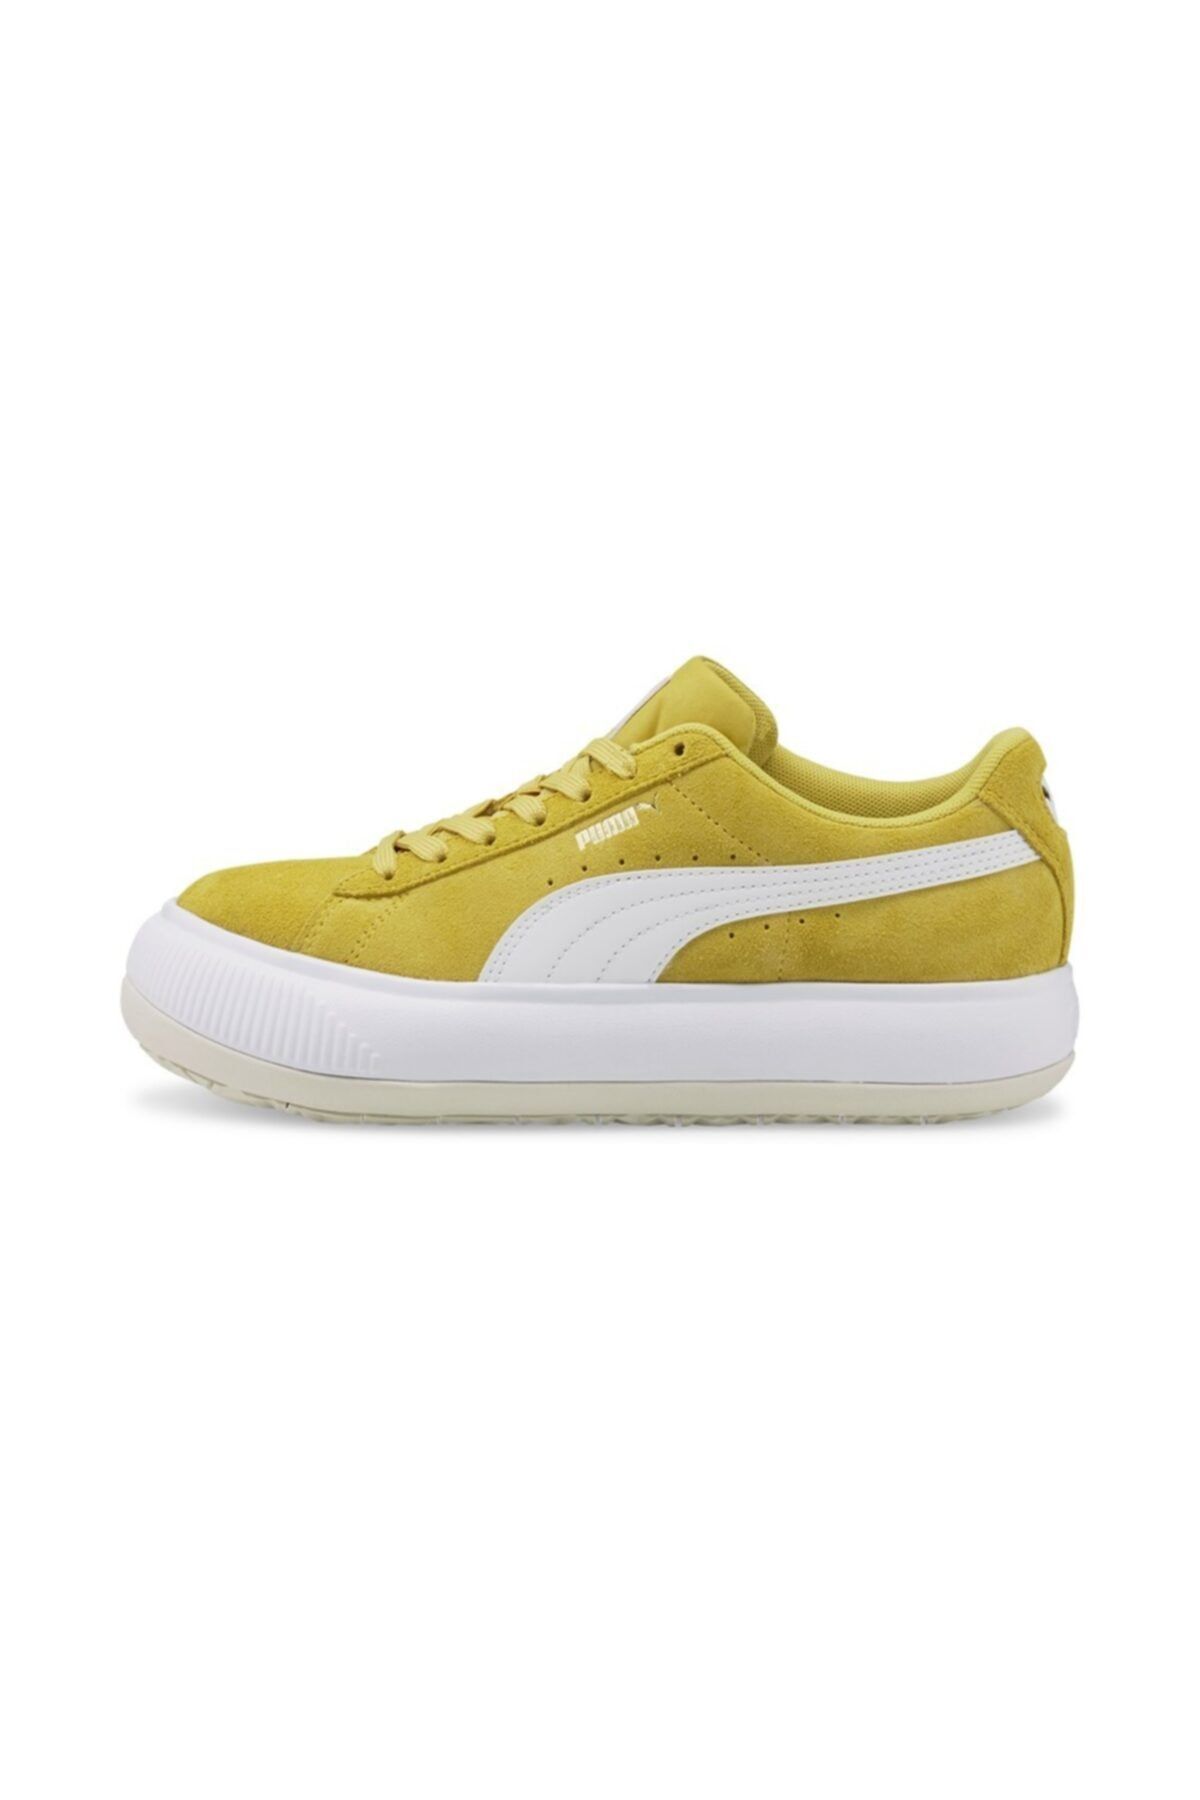 Puma Suede Mayu Kadın Sarı Günlük Spor Ayakkabı - 380686-11